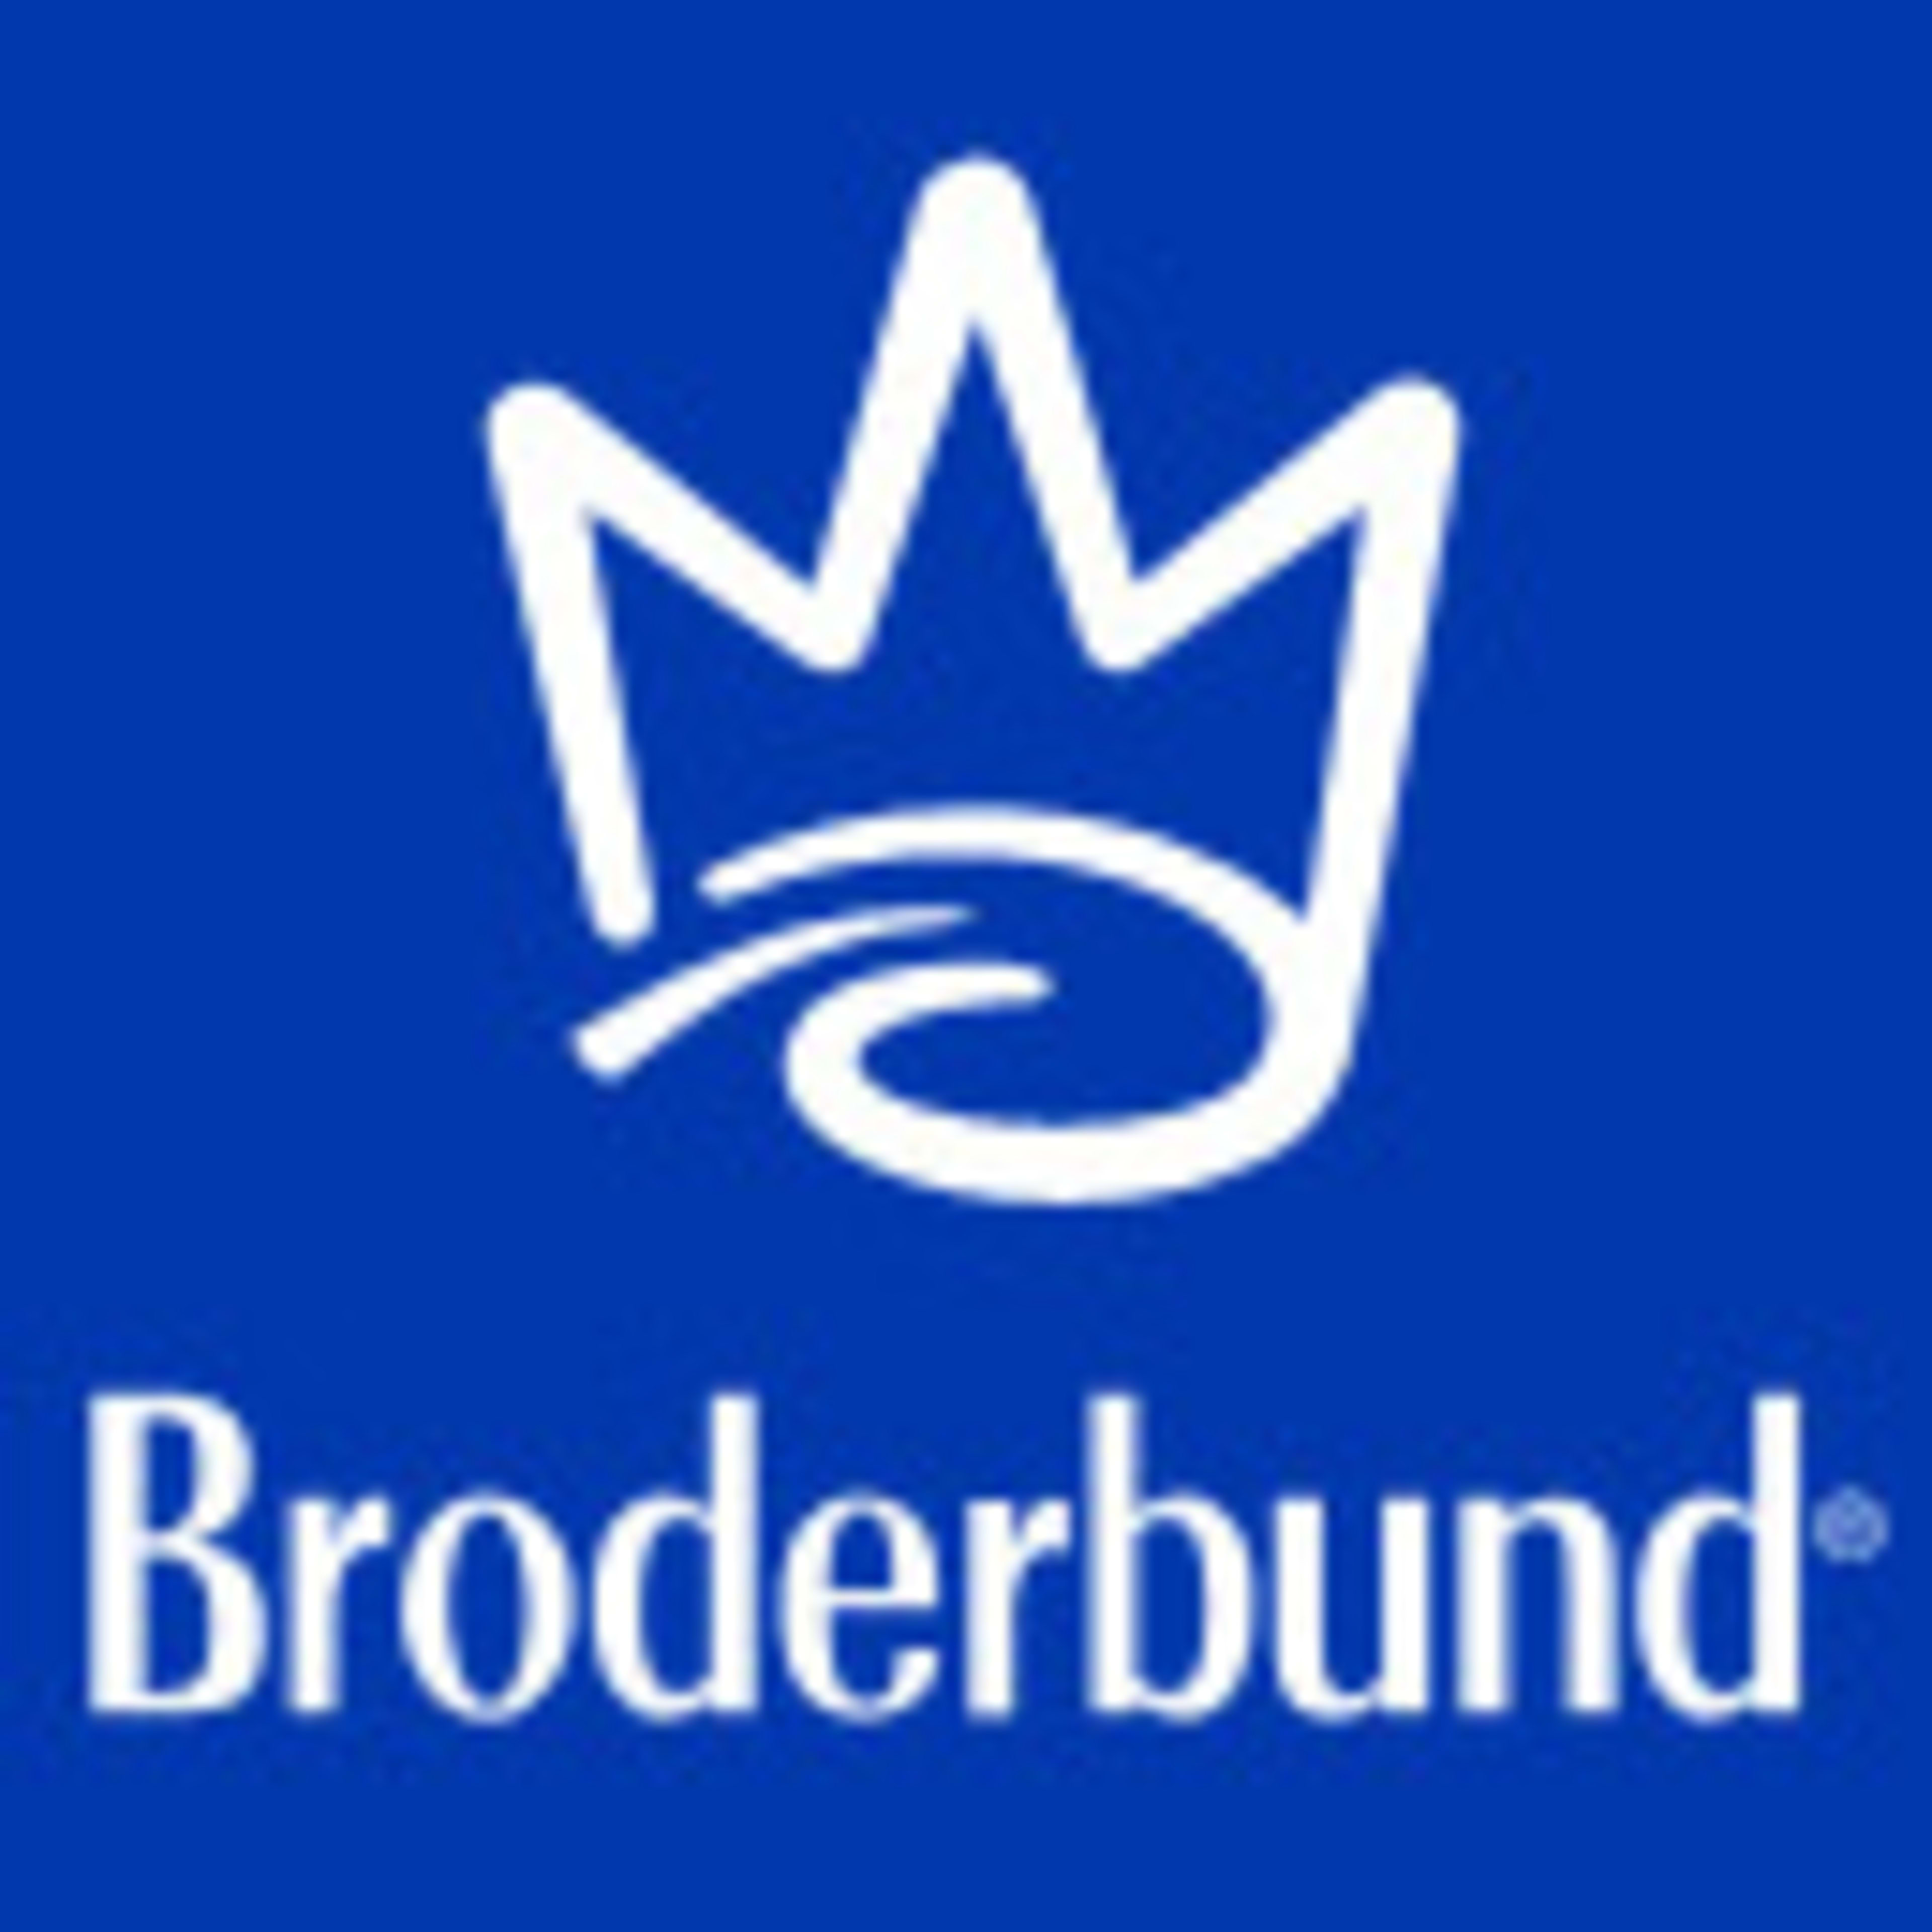 Broderbund Code